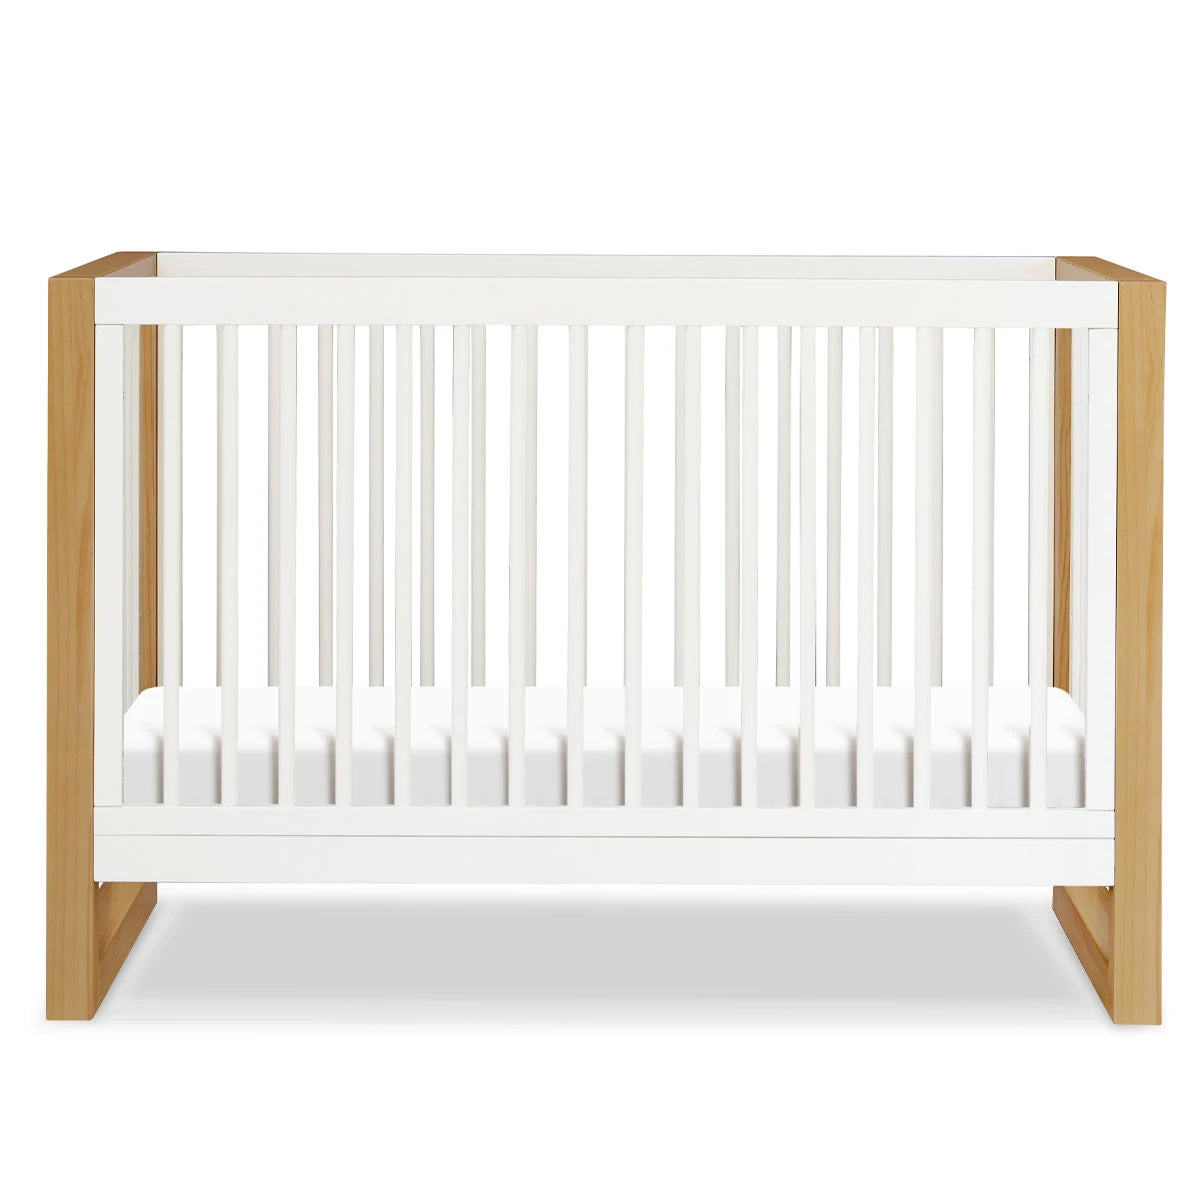 Warm White / Honey - Namesake Nantucket 3-in-1 Convertible Crib with Toddler Bed Conversion Kit 2